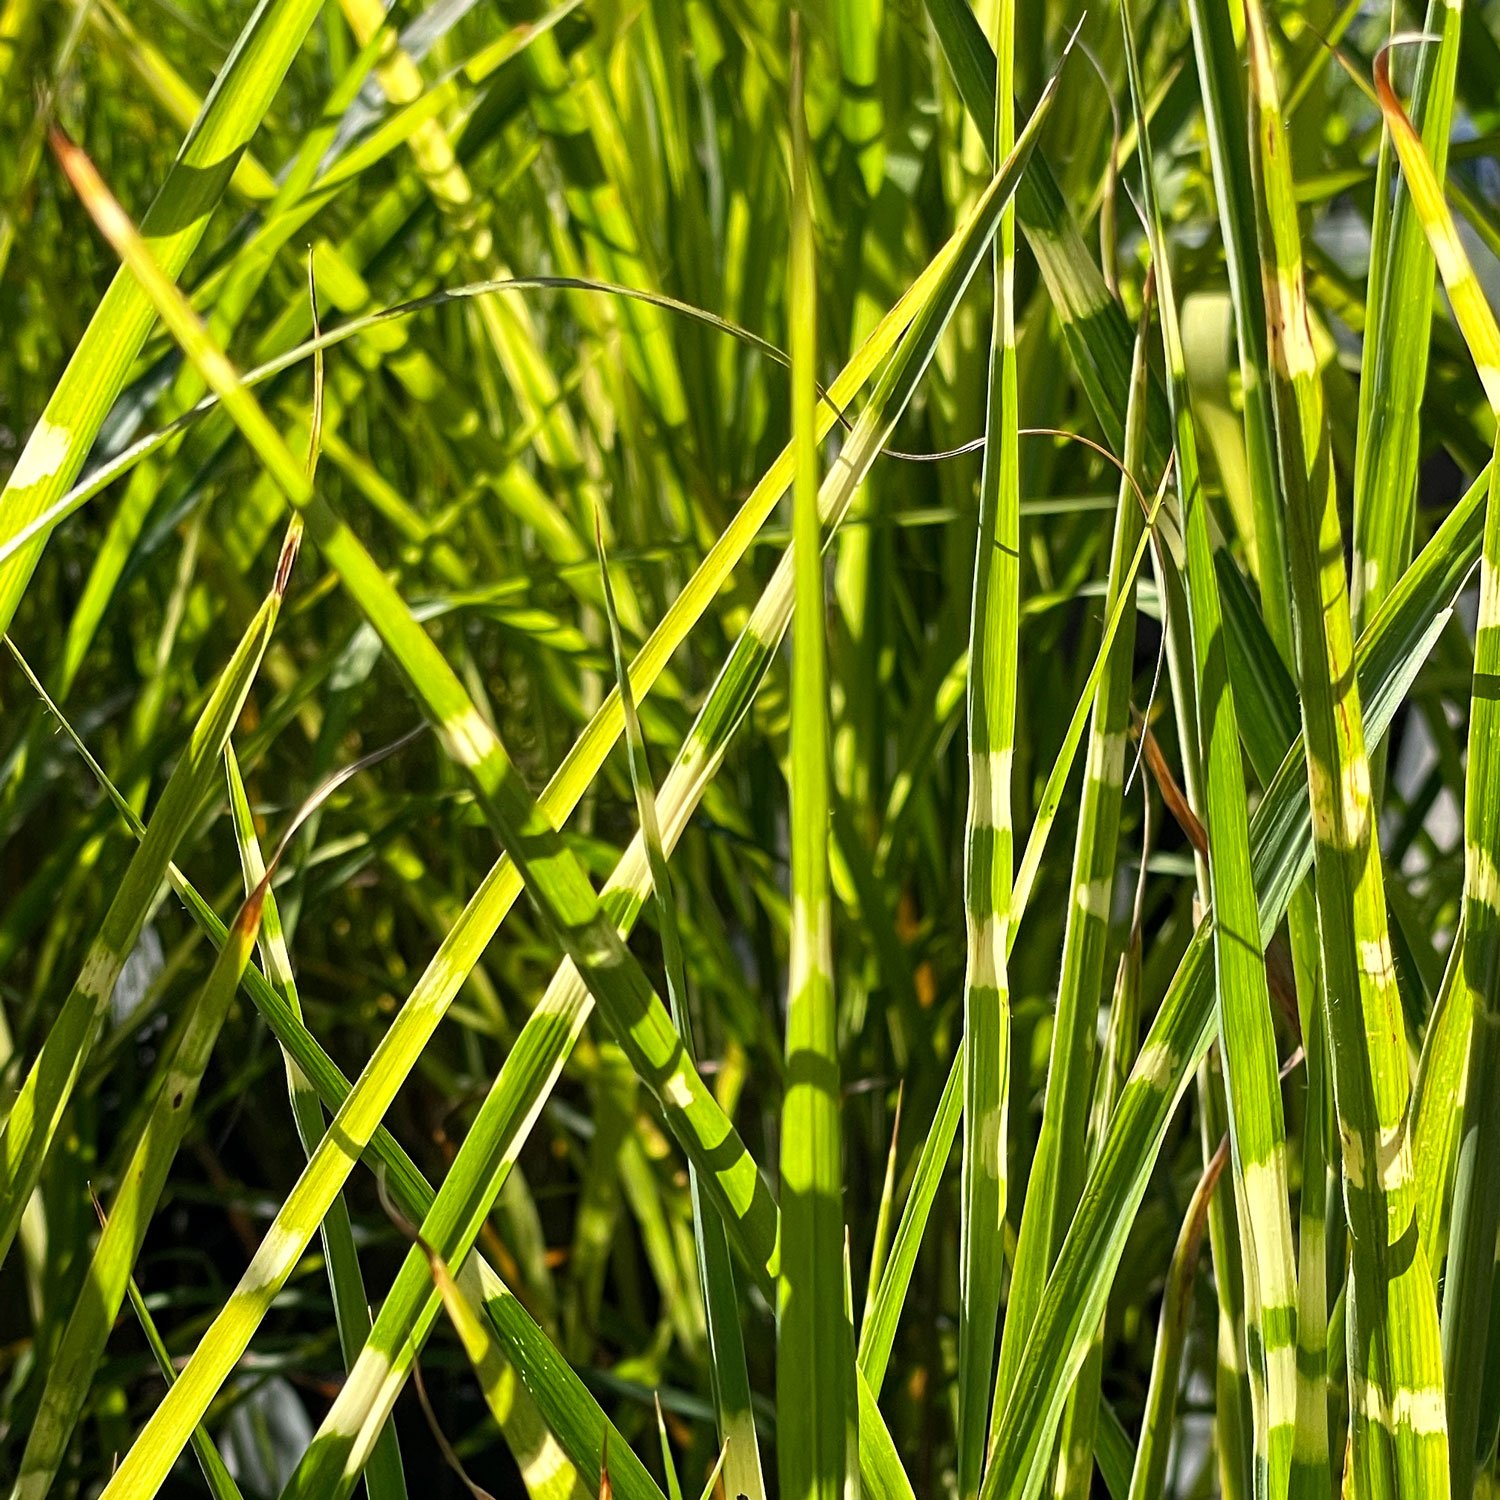 Porcupine-Grass-Miscanthus.jpg